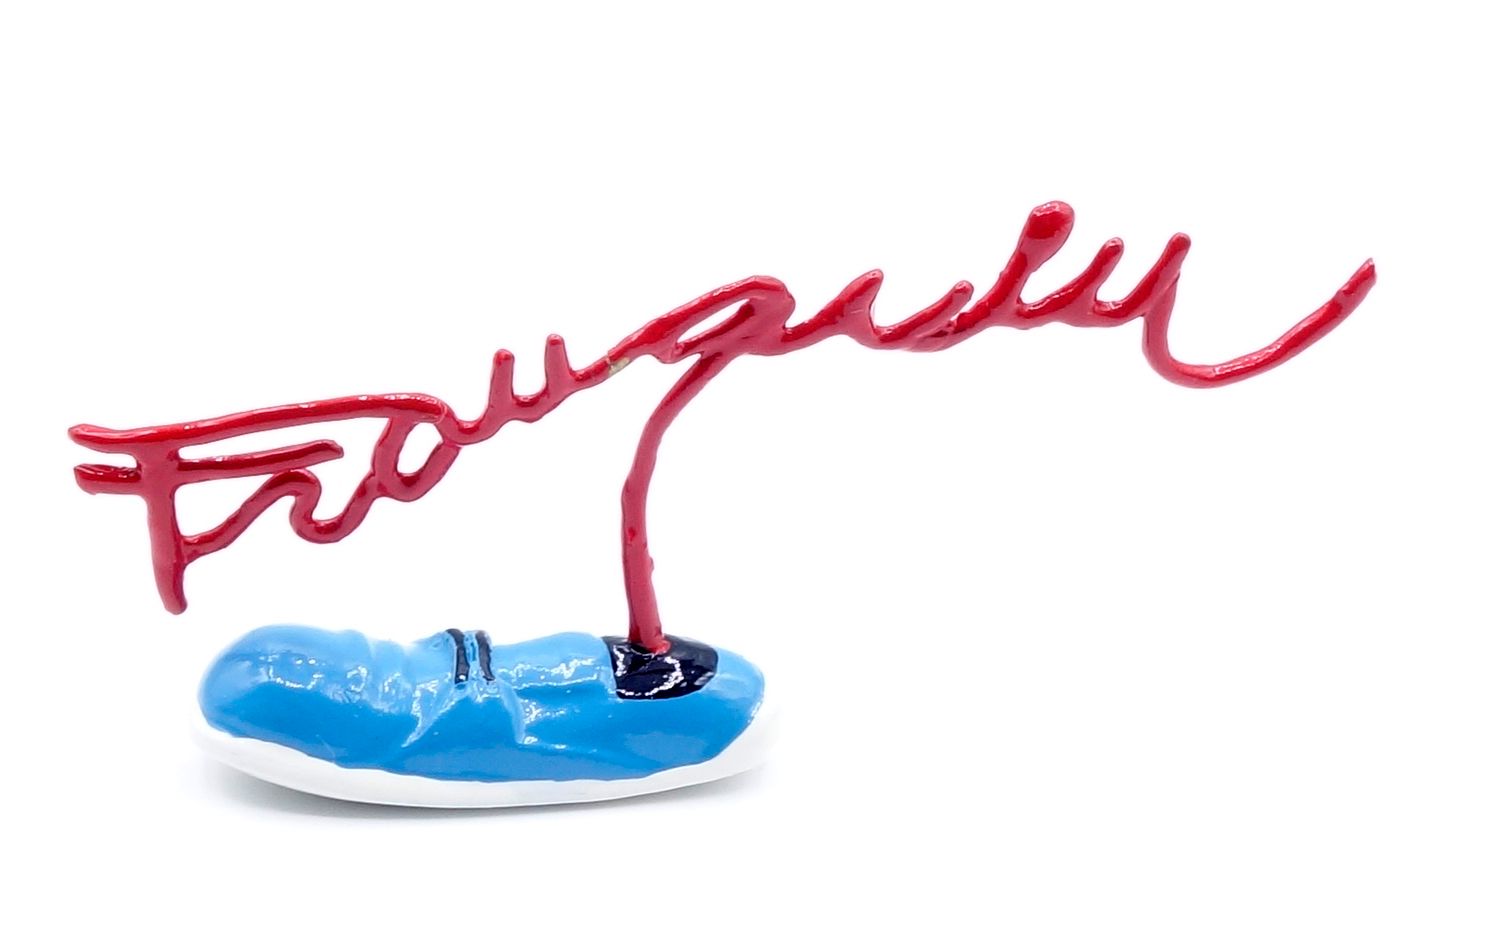 André FRANQUIN 
PIXI: Firmas Franquin, zapato (3768), 2006, 300 ejemplares, BC